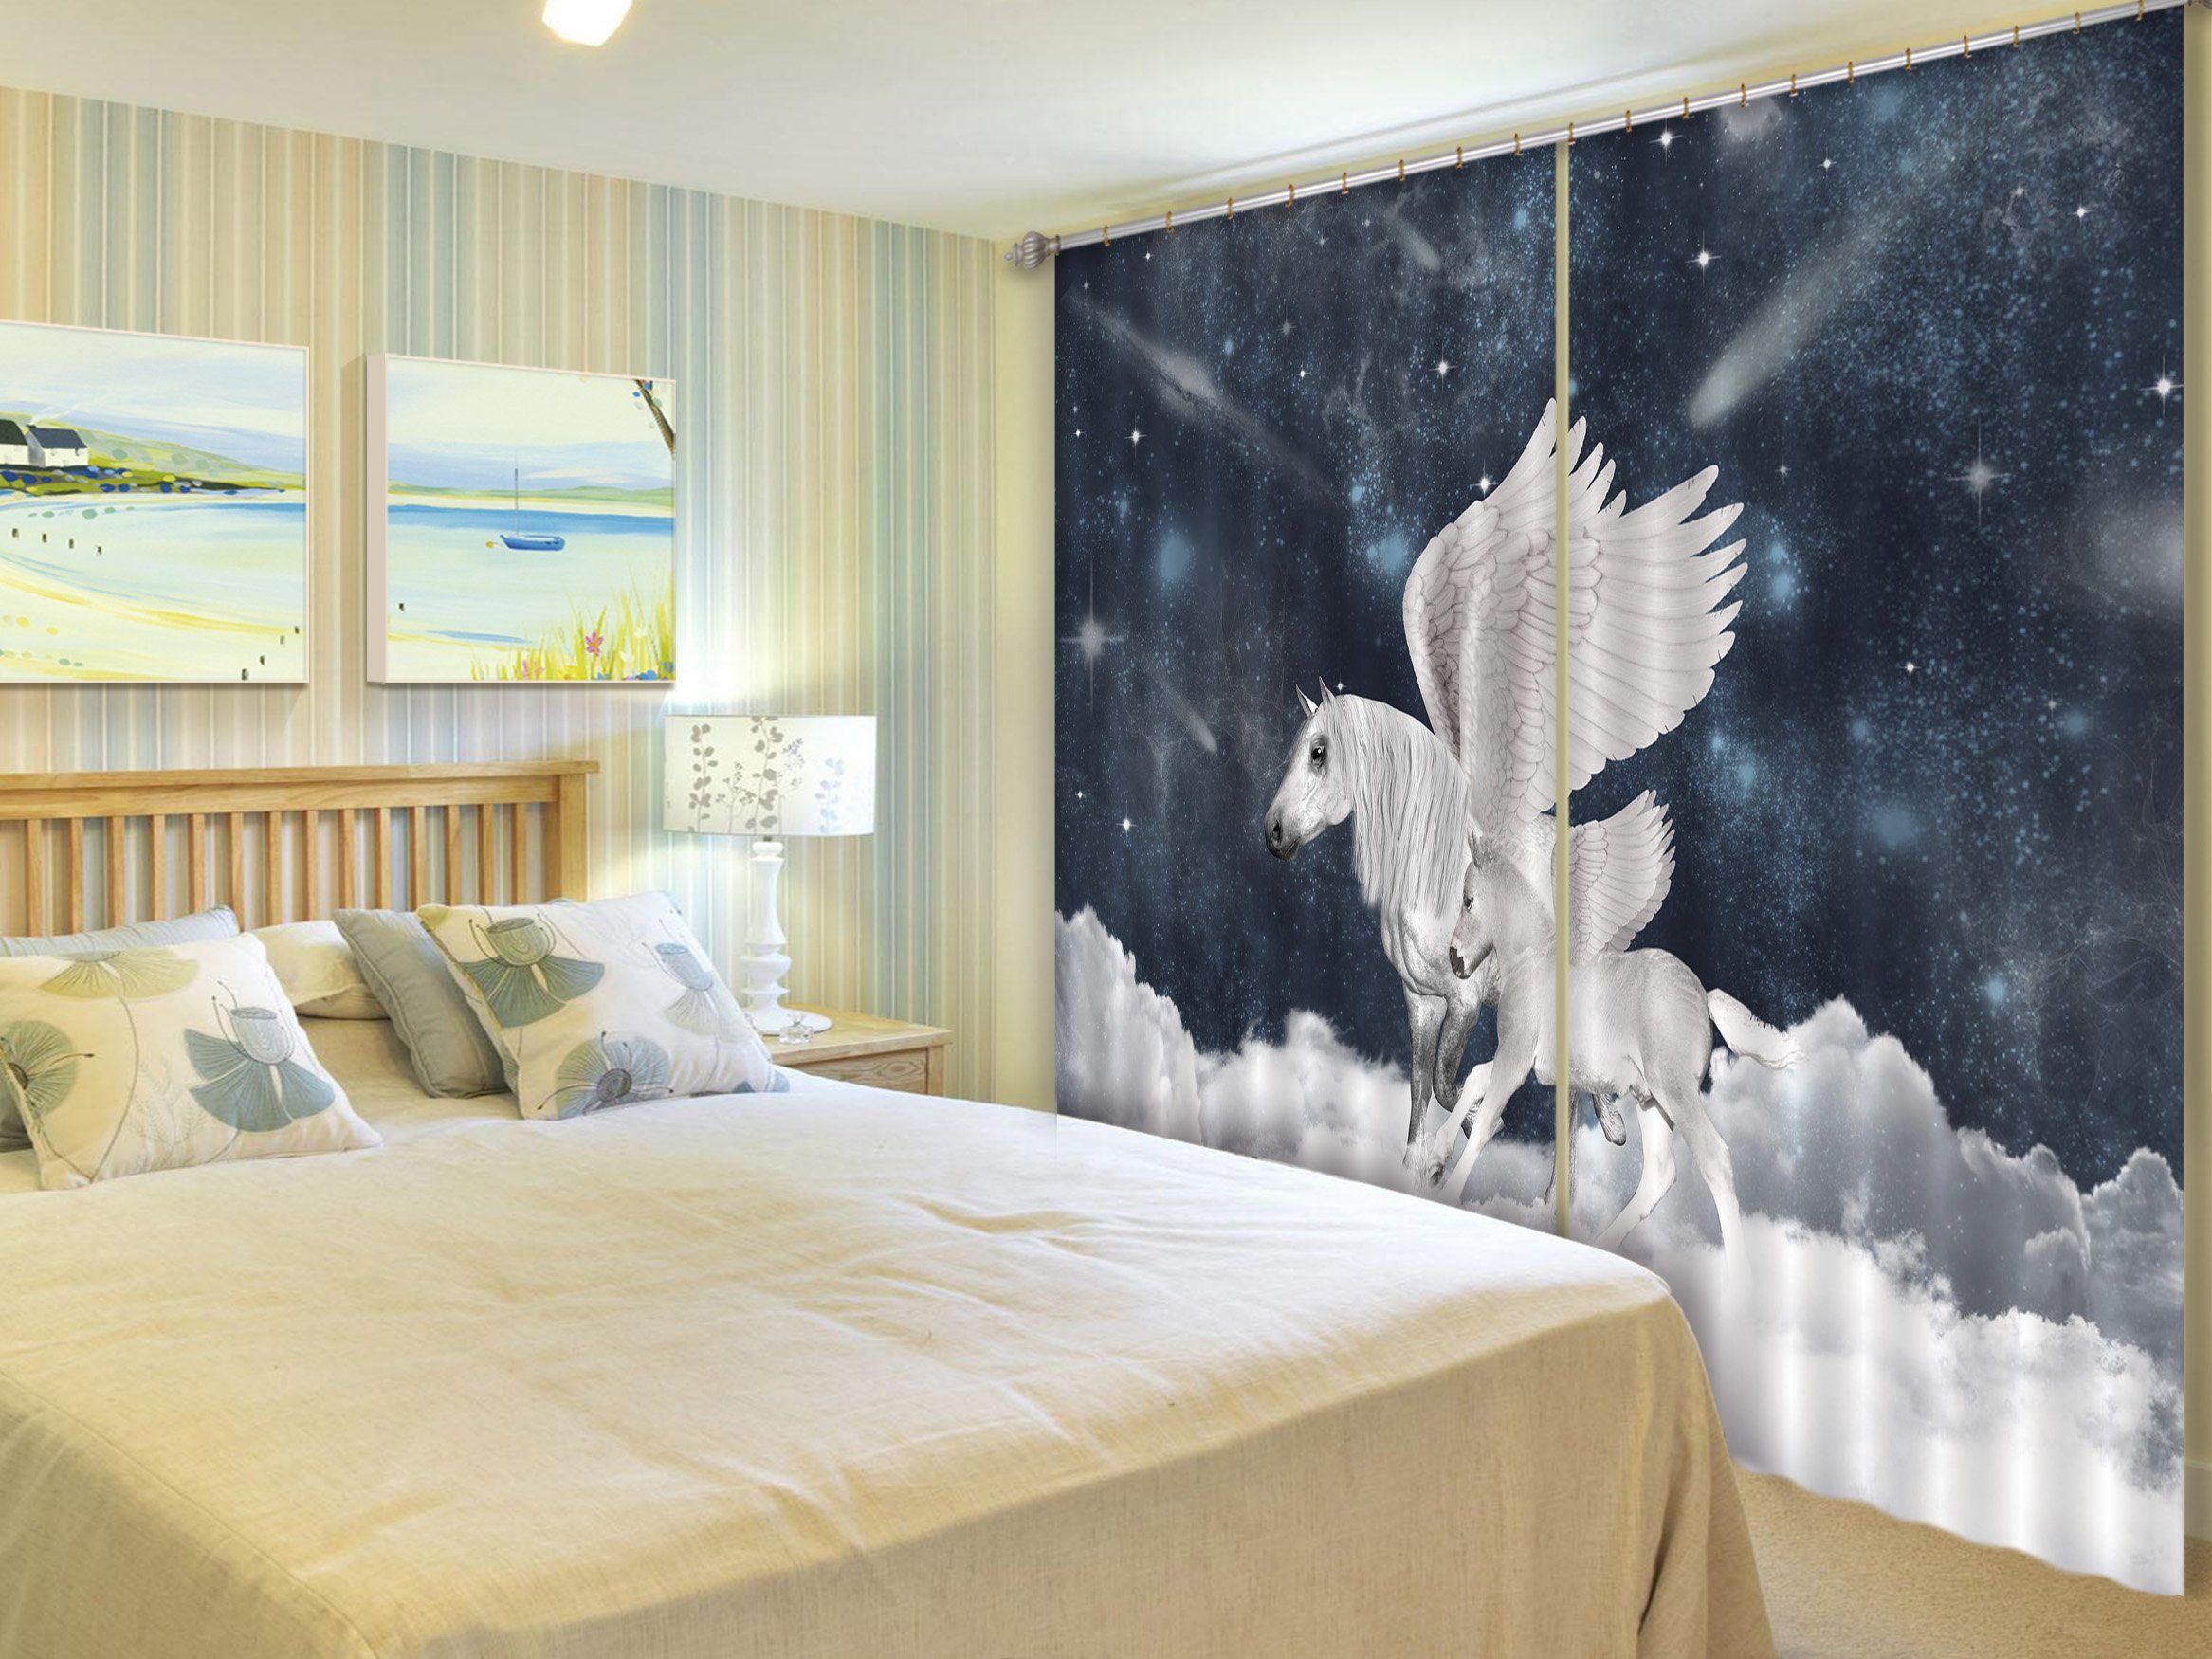 3D Star White Clouds Unicorns 100 Curtains Drapes Curtains AJ Creativity Home 